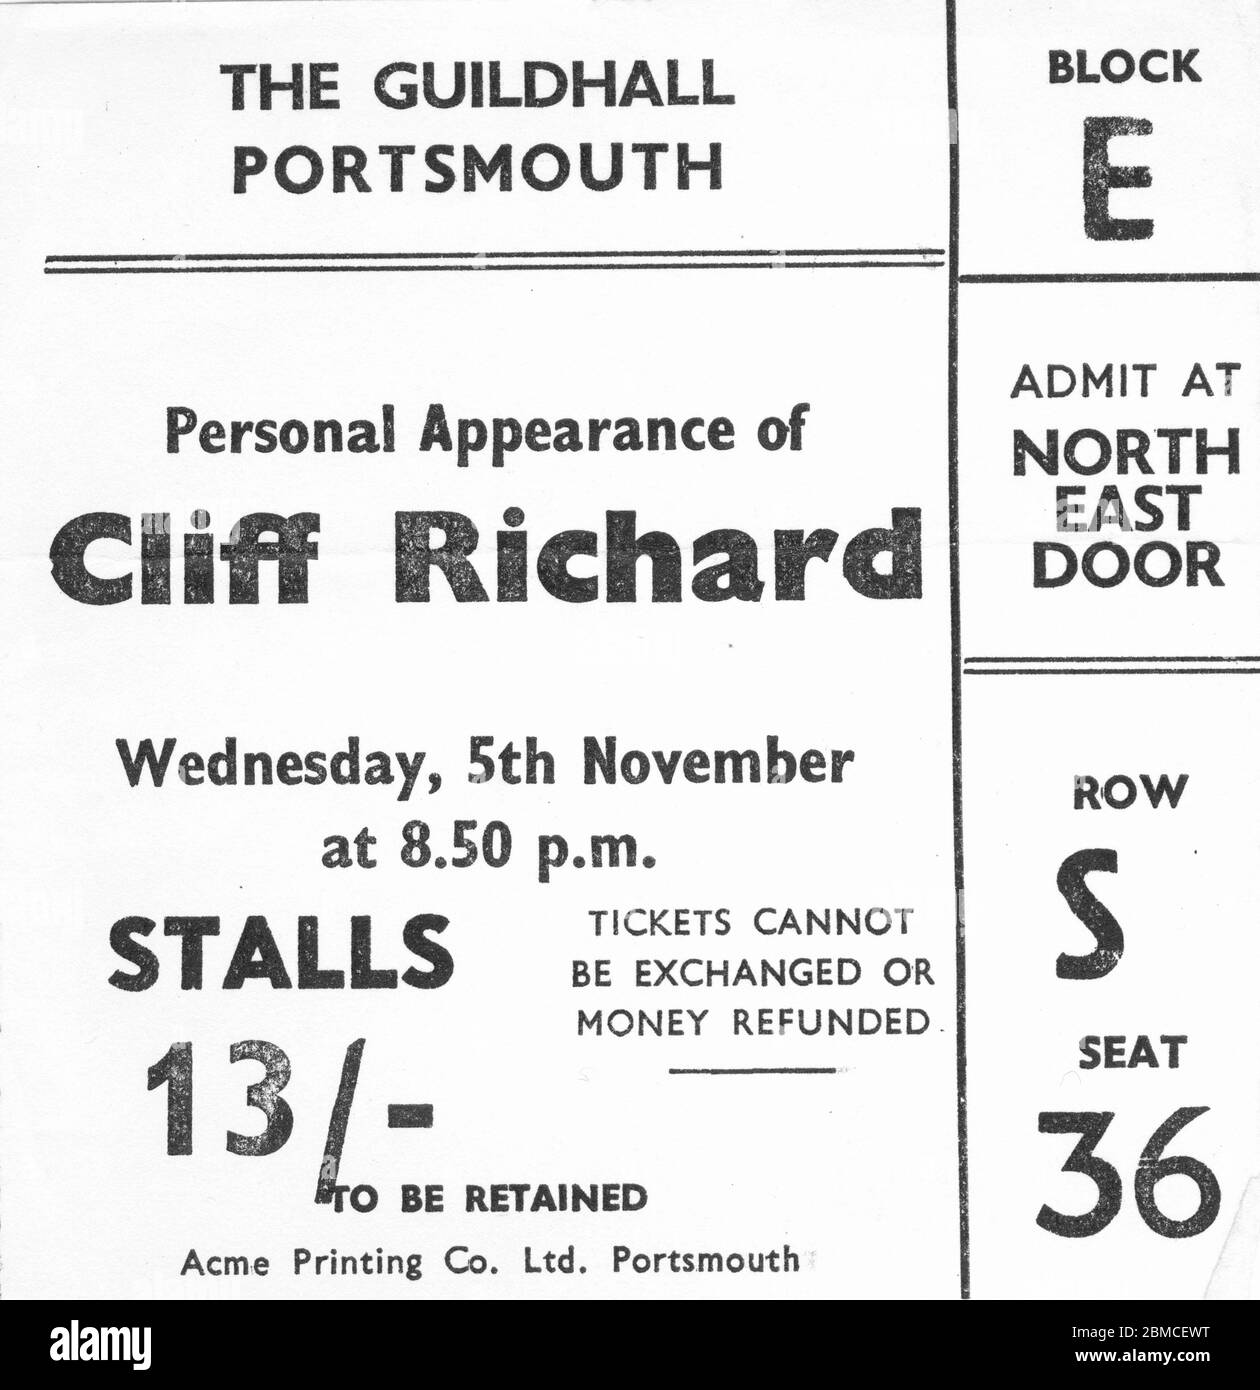 Eintrittskarte für das Guildhall Portsmouth, um ein Konzert von Cliff Richard am Mittwoch, den 5. November 1969 zu sehen Stockfoto